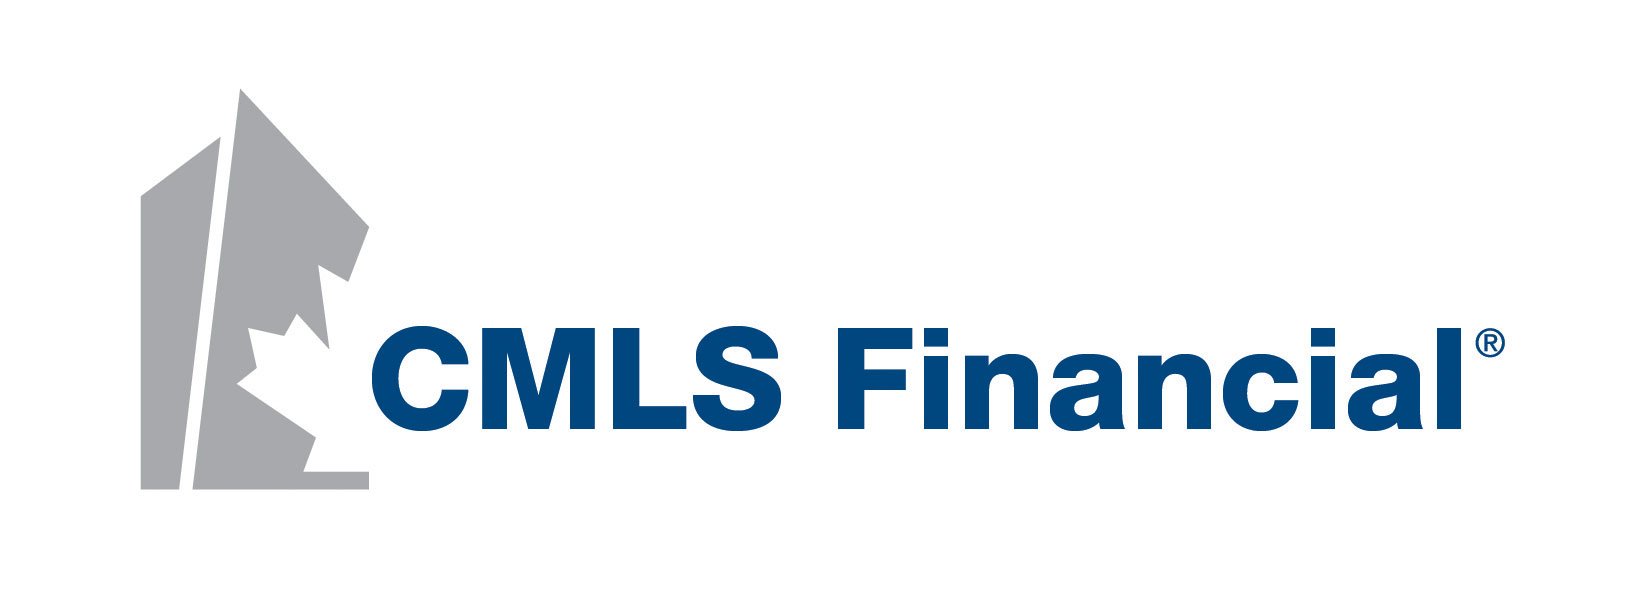 CMLS Financial - Logo.jpg